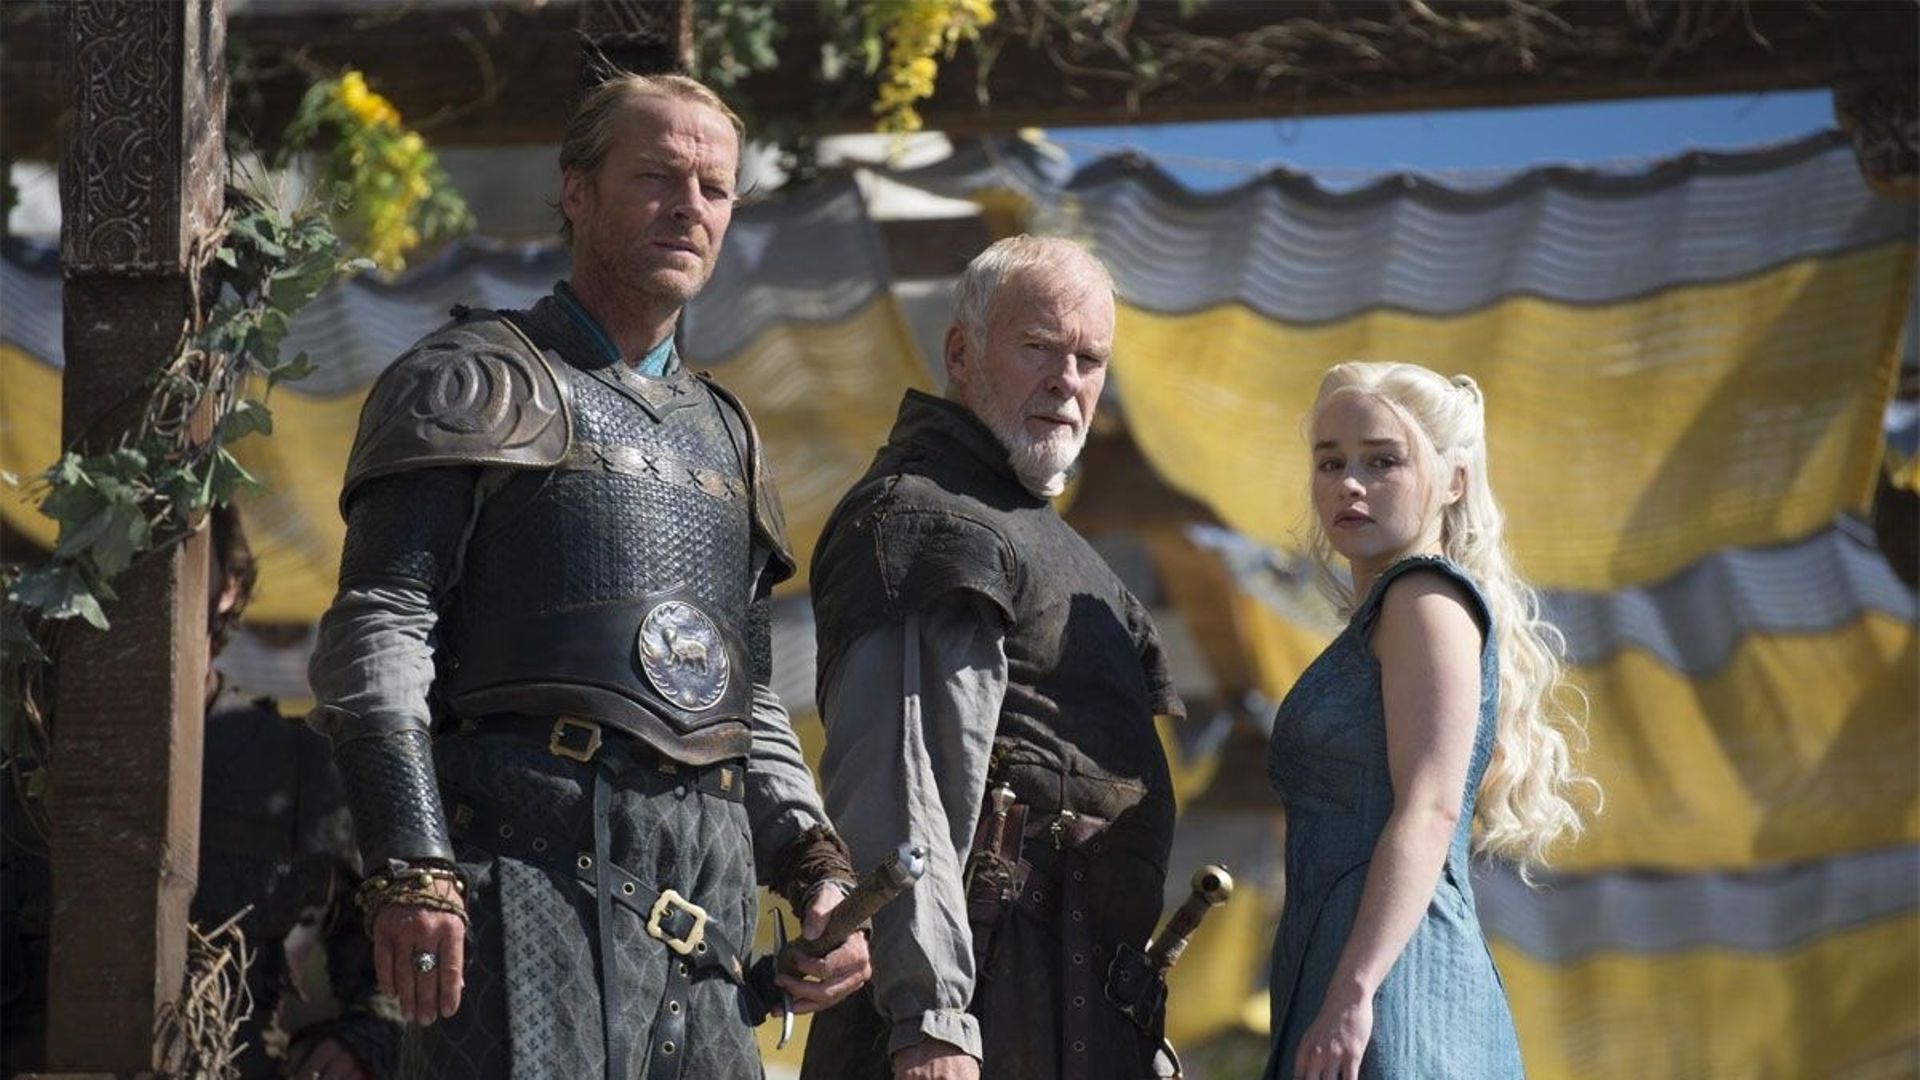 Les deux prochains épisodes de "Game of Thrones" sont attendus les dimanches 8 et 15 juin aux États-Unis